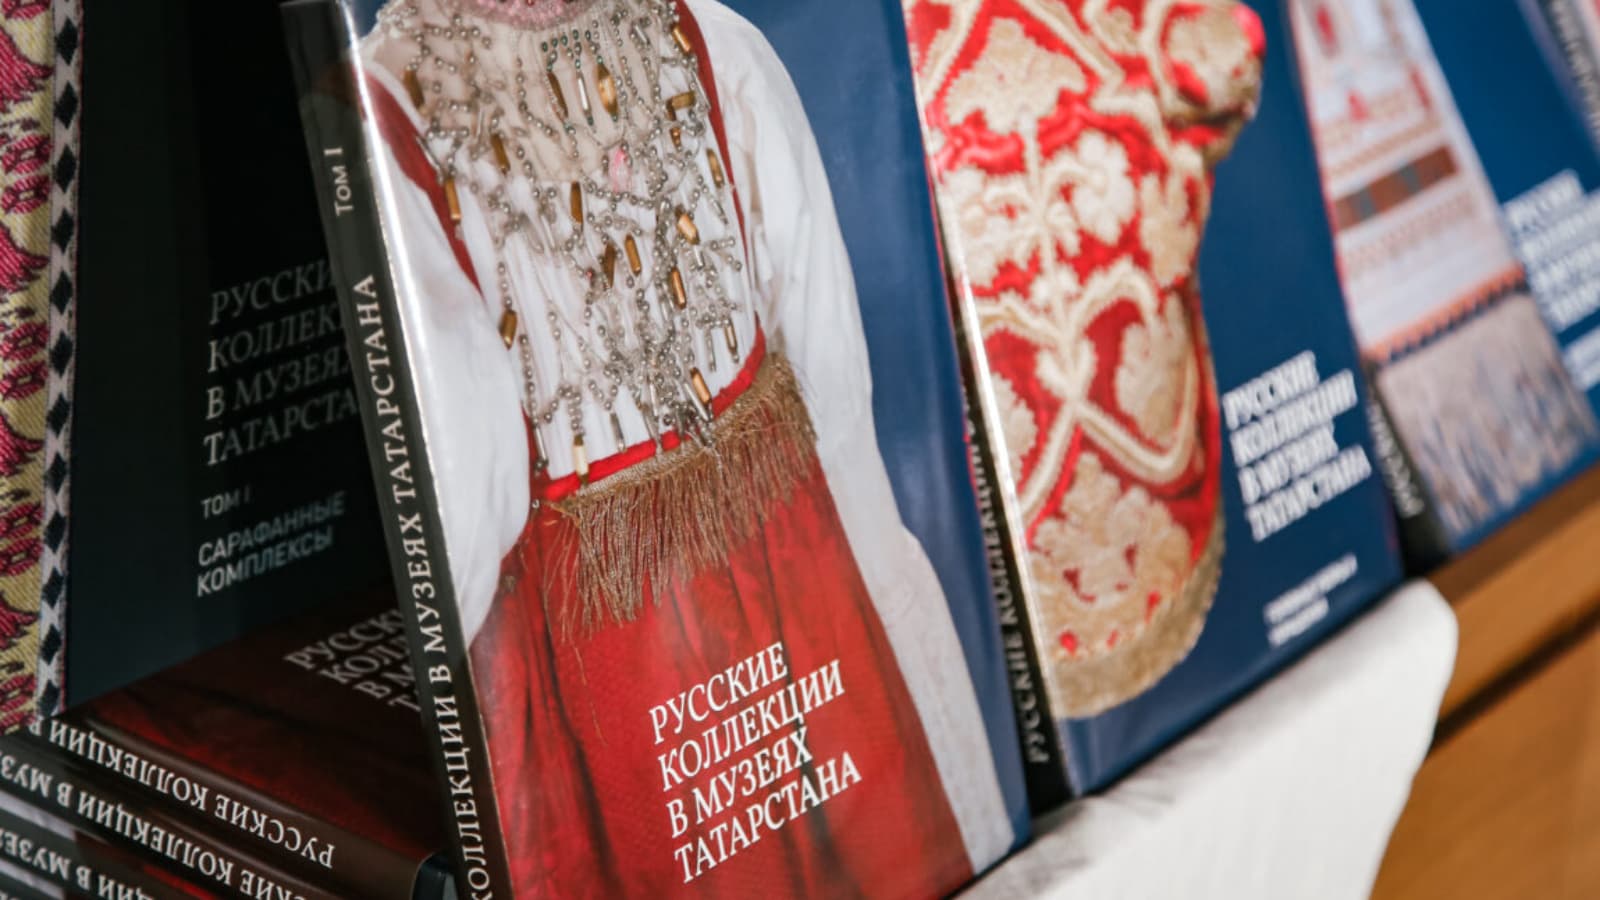 Национальный музей Республики Татарстан стал участником историко-этнографического проекта «Русские коллекции в музеях Татарстана».